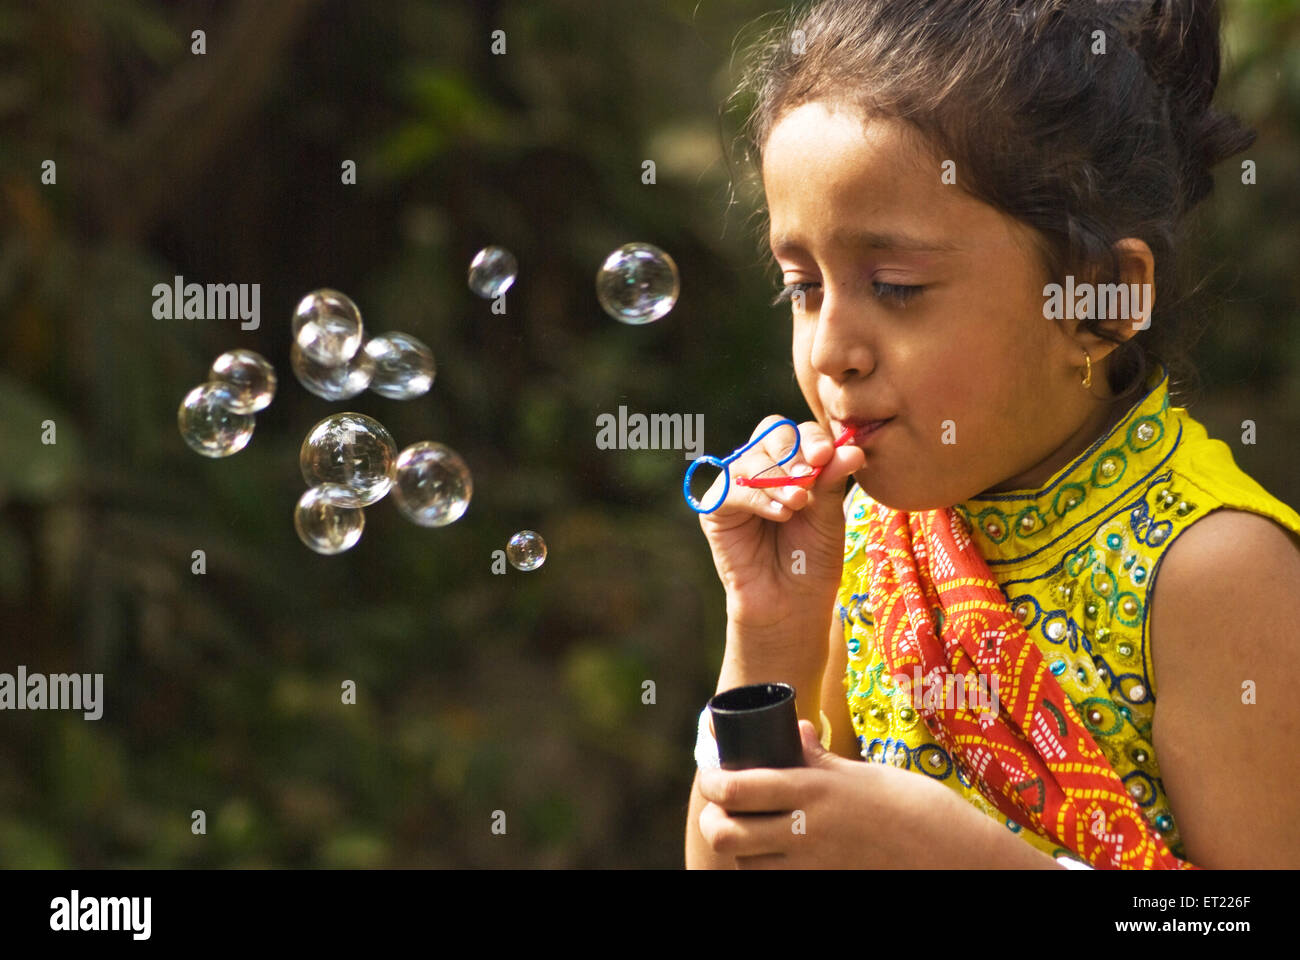 Jeune fille soufflant des bulles de savon MR# 714G Banque D'Images